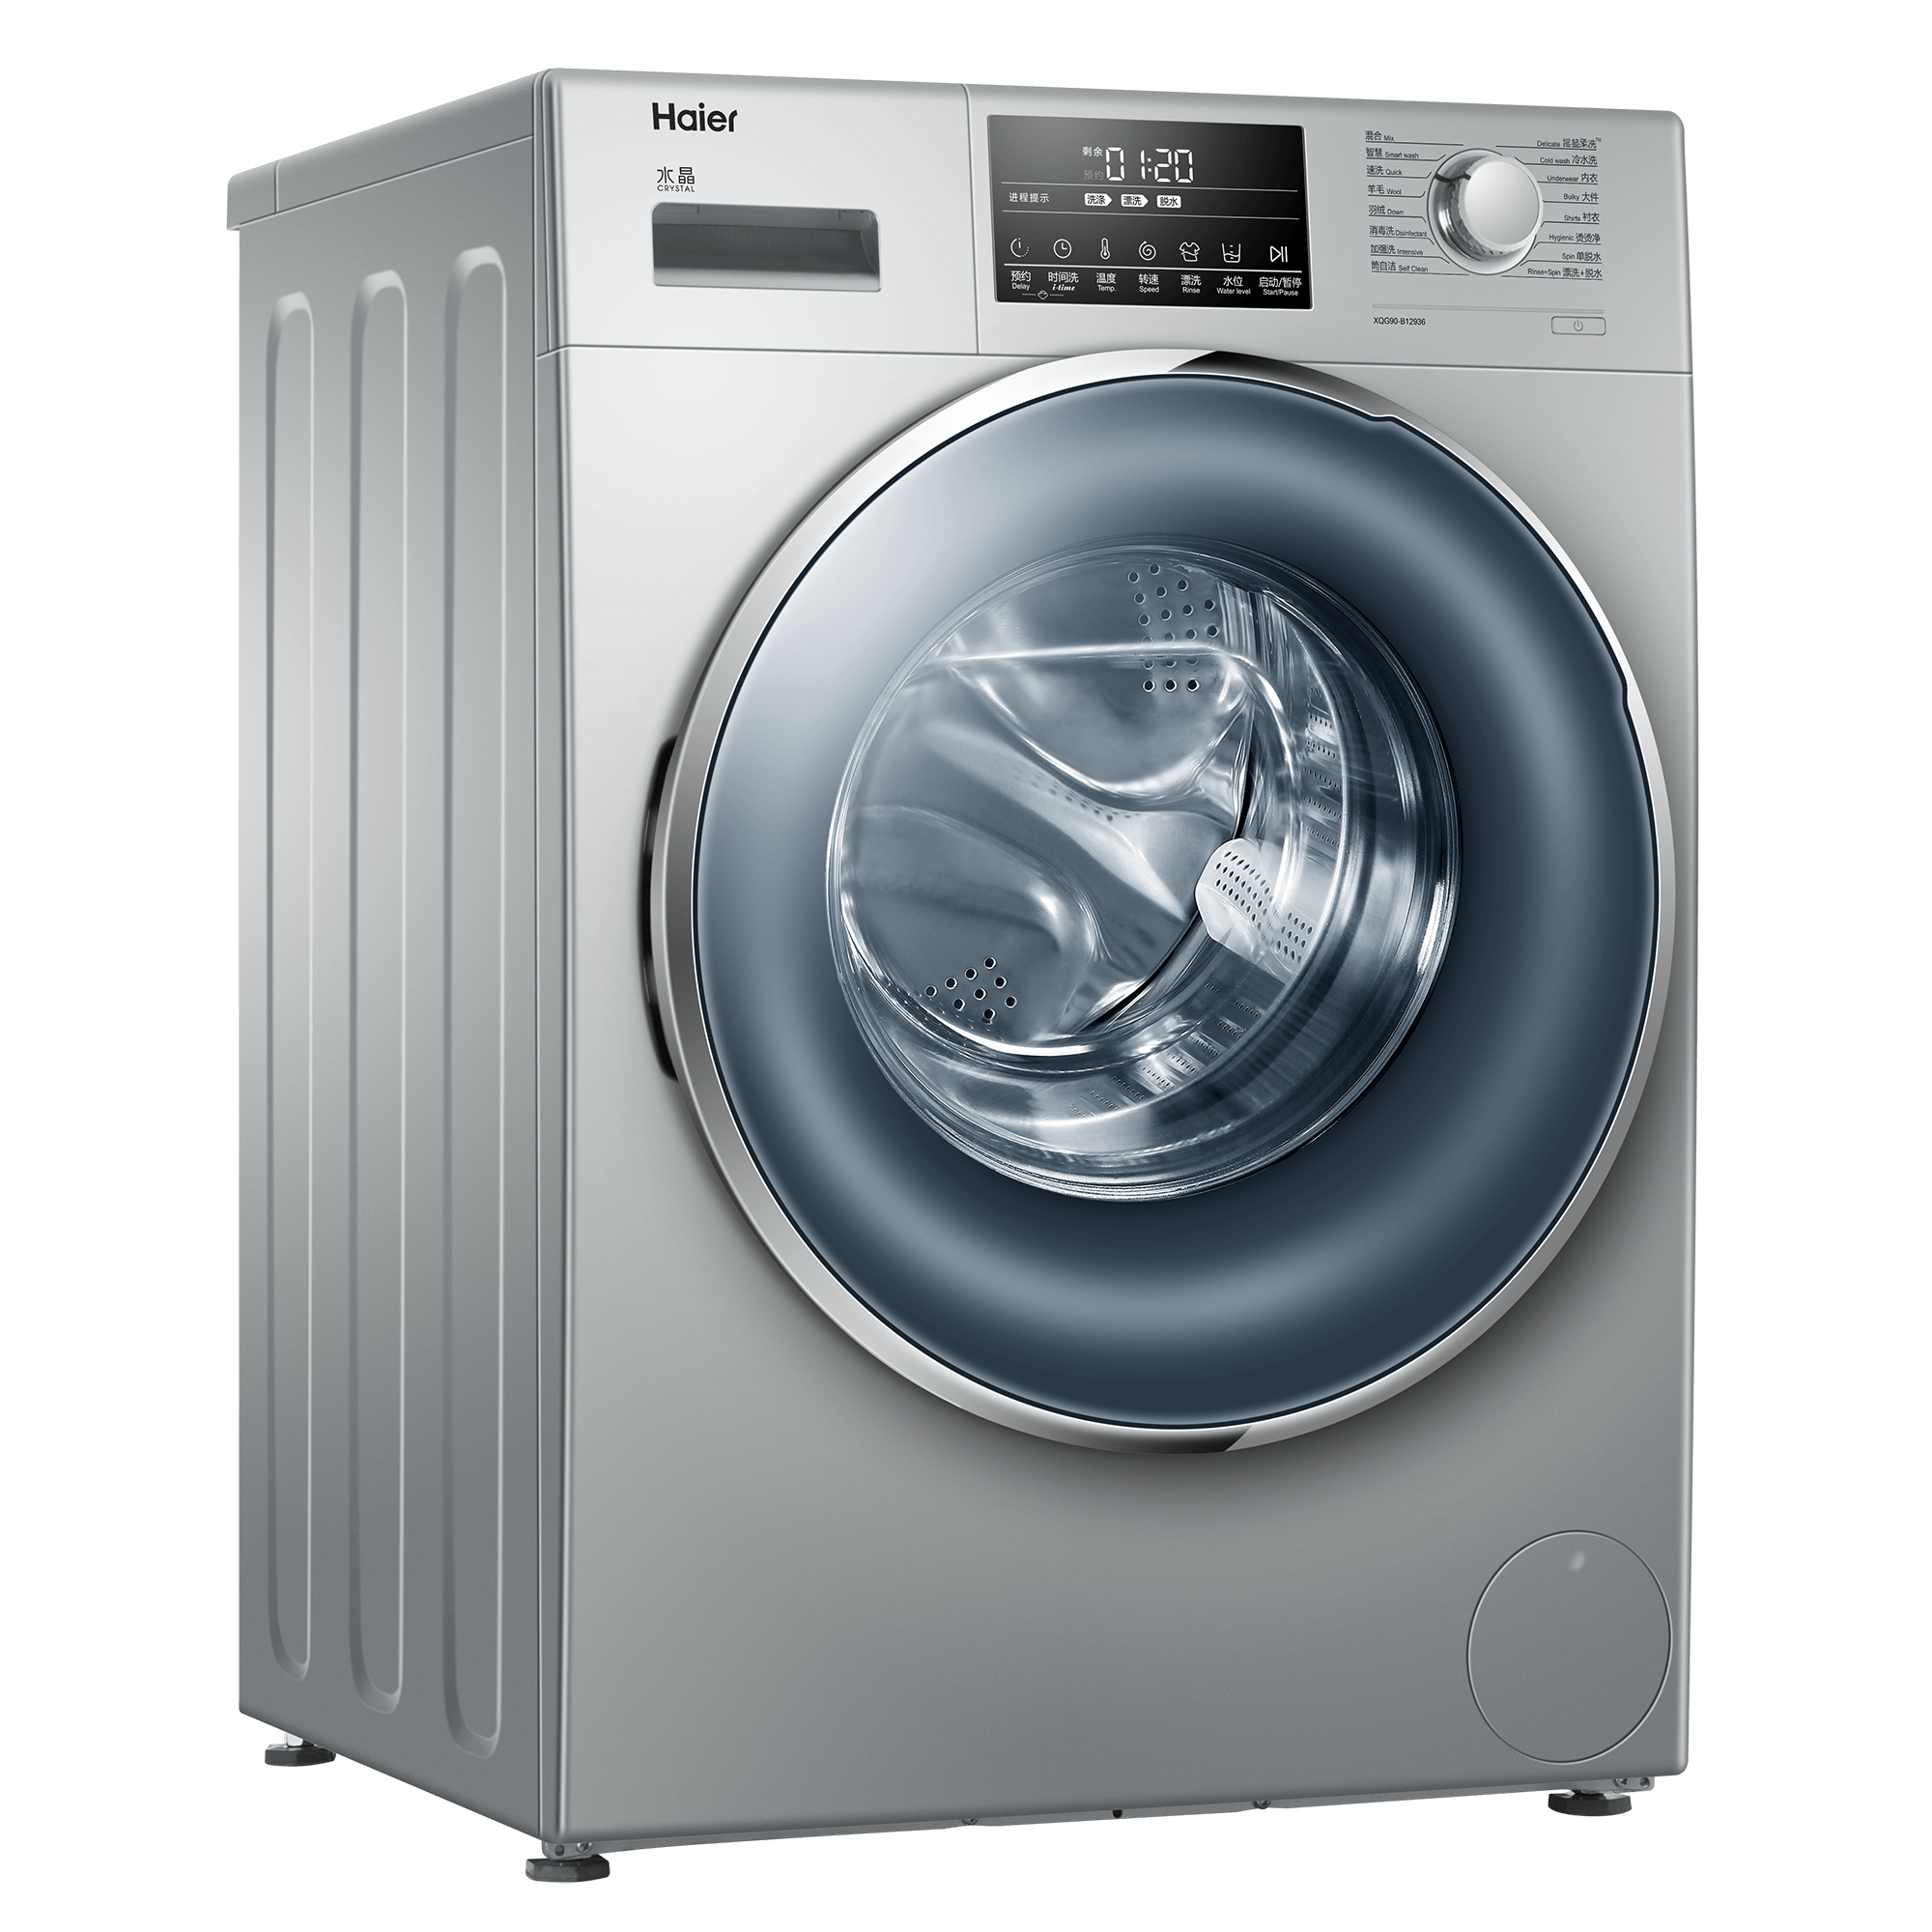 【美的TD100-1430WDY-Y59B】美的洗衣机,TD100-1430WDY-Y59B,官方报价_规格_参数_图片-美的商城